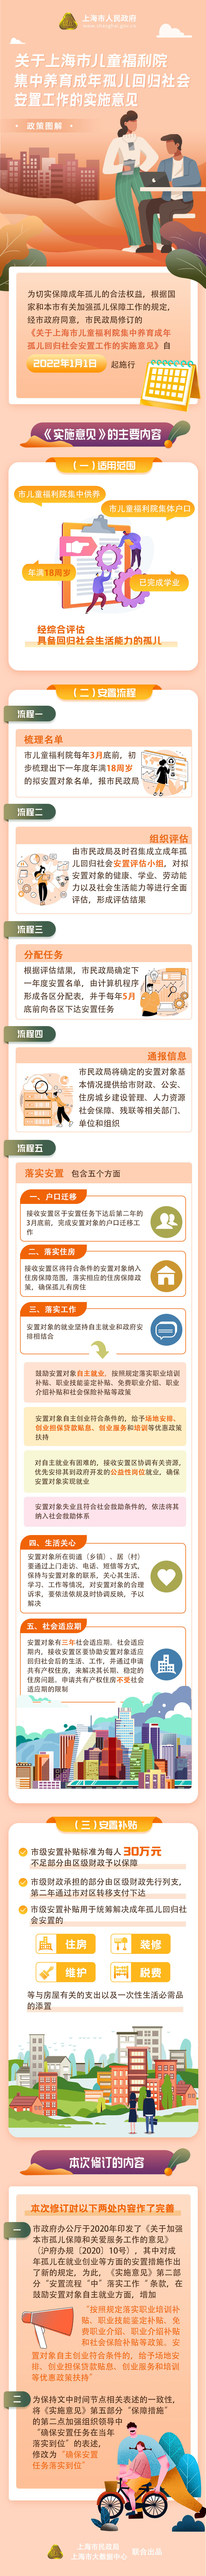 《关于上海市儿童福利院集中养育成年孤儿回归社会安置工作的实施意见》政策图解.jpg